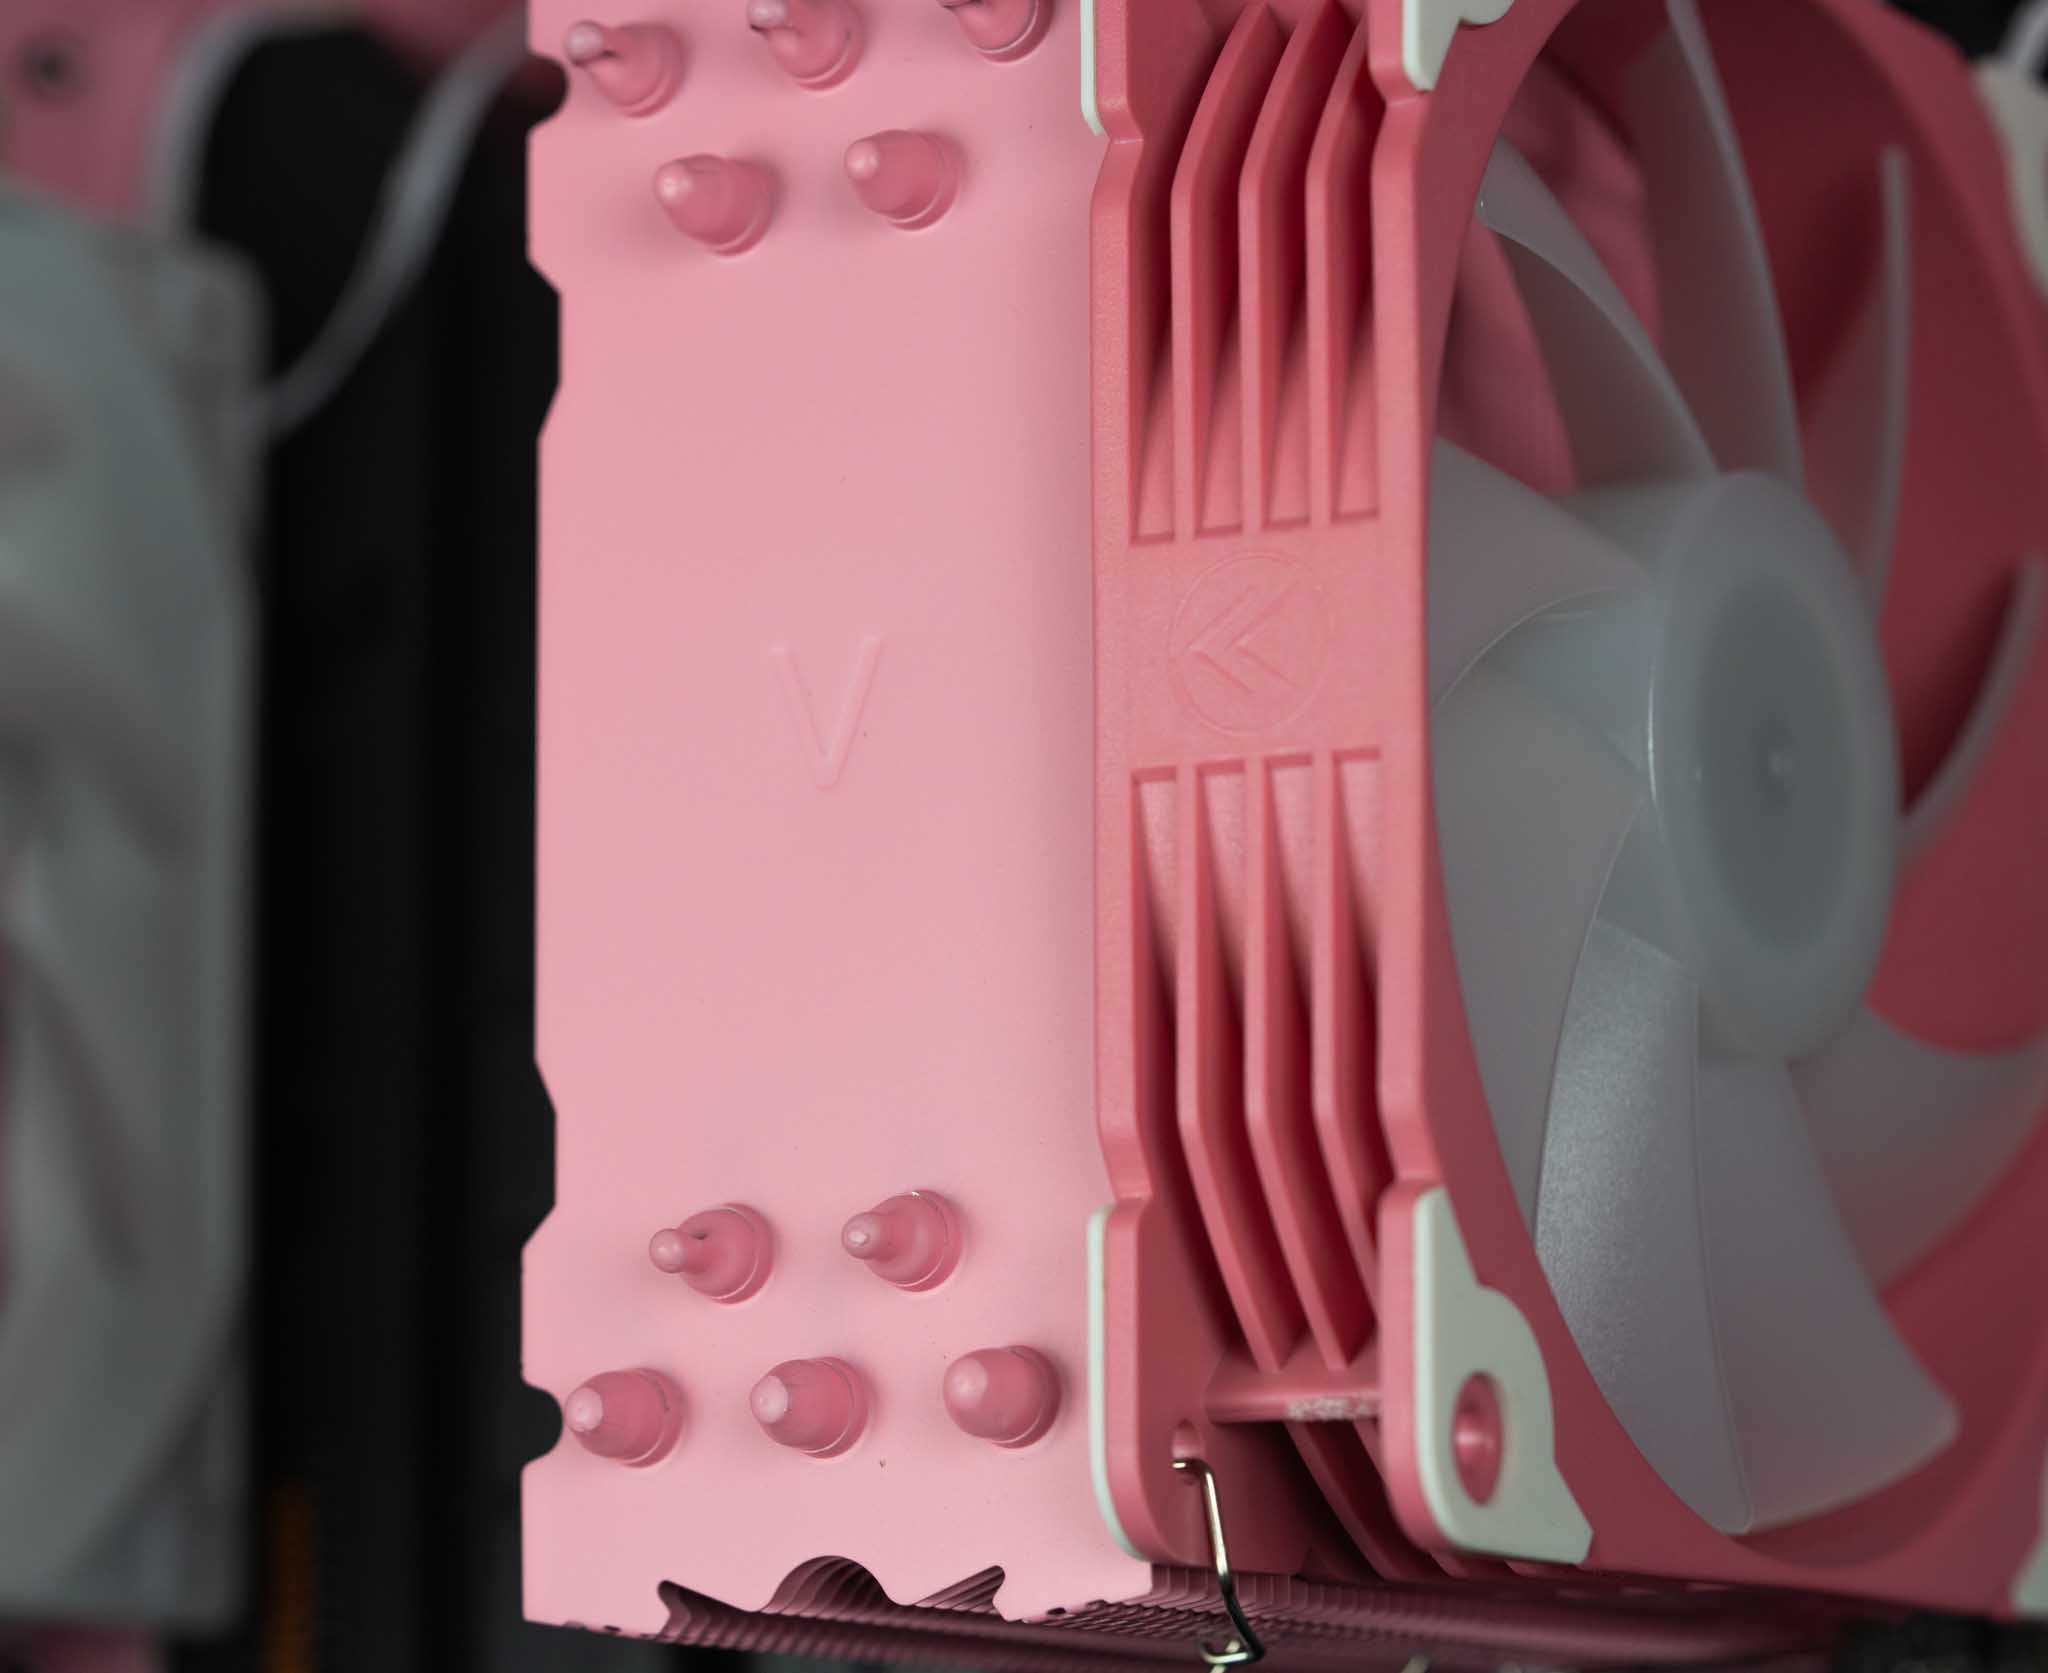 The Peltast - Intel - Pink